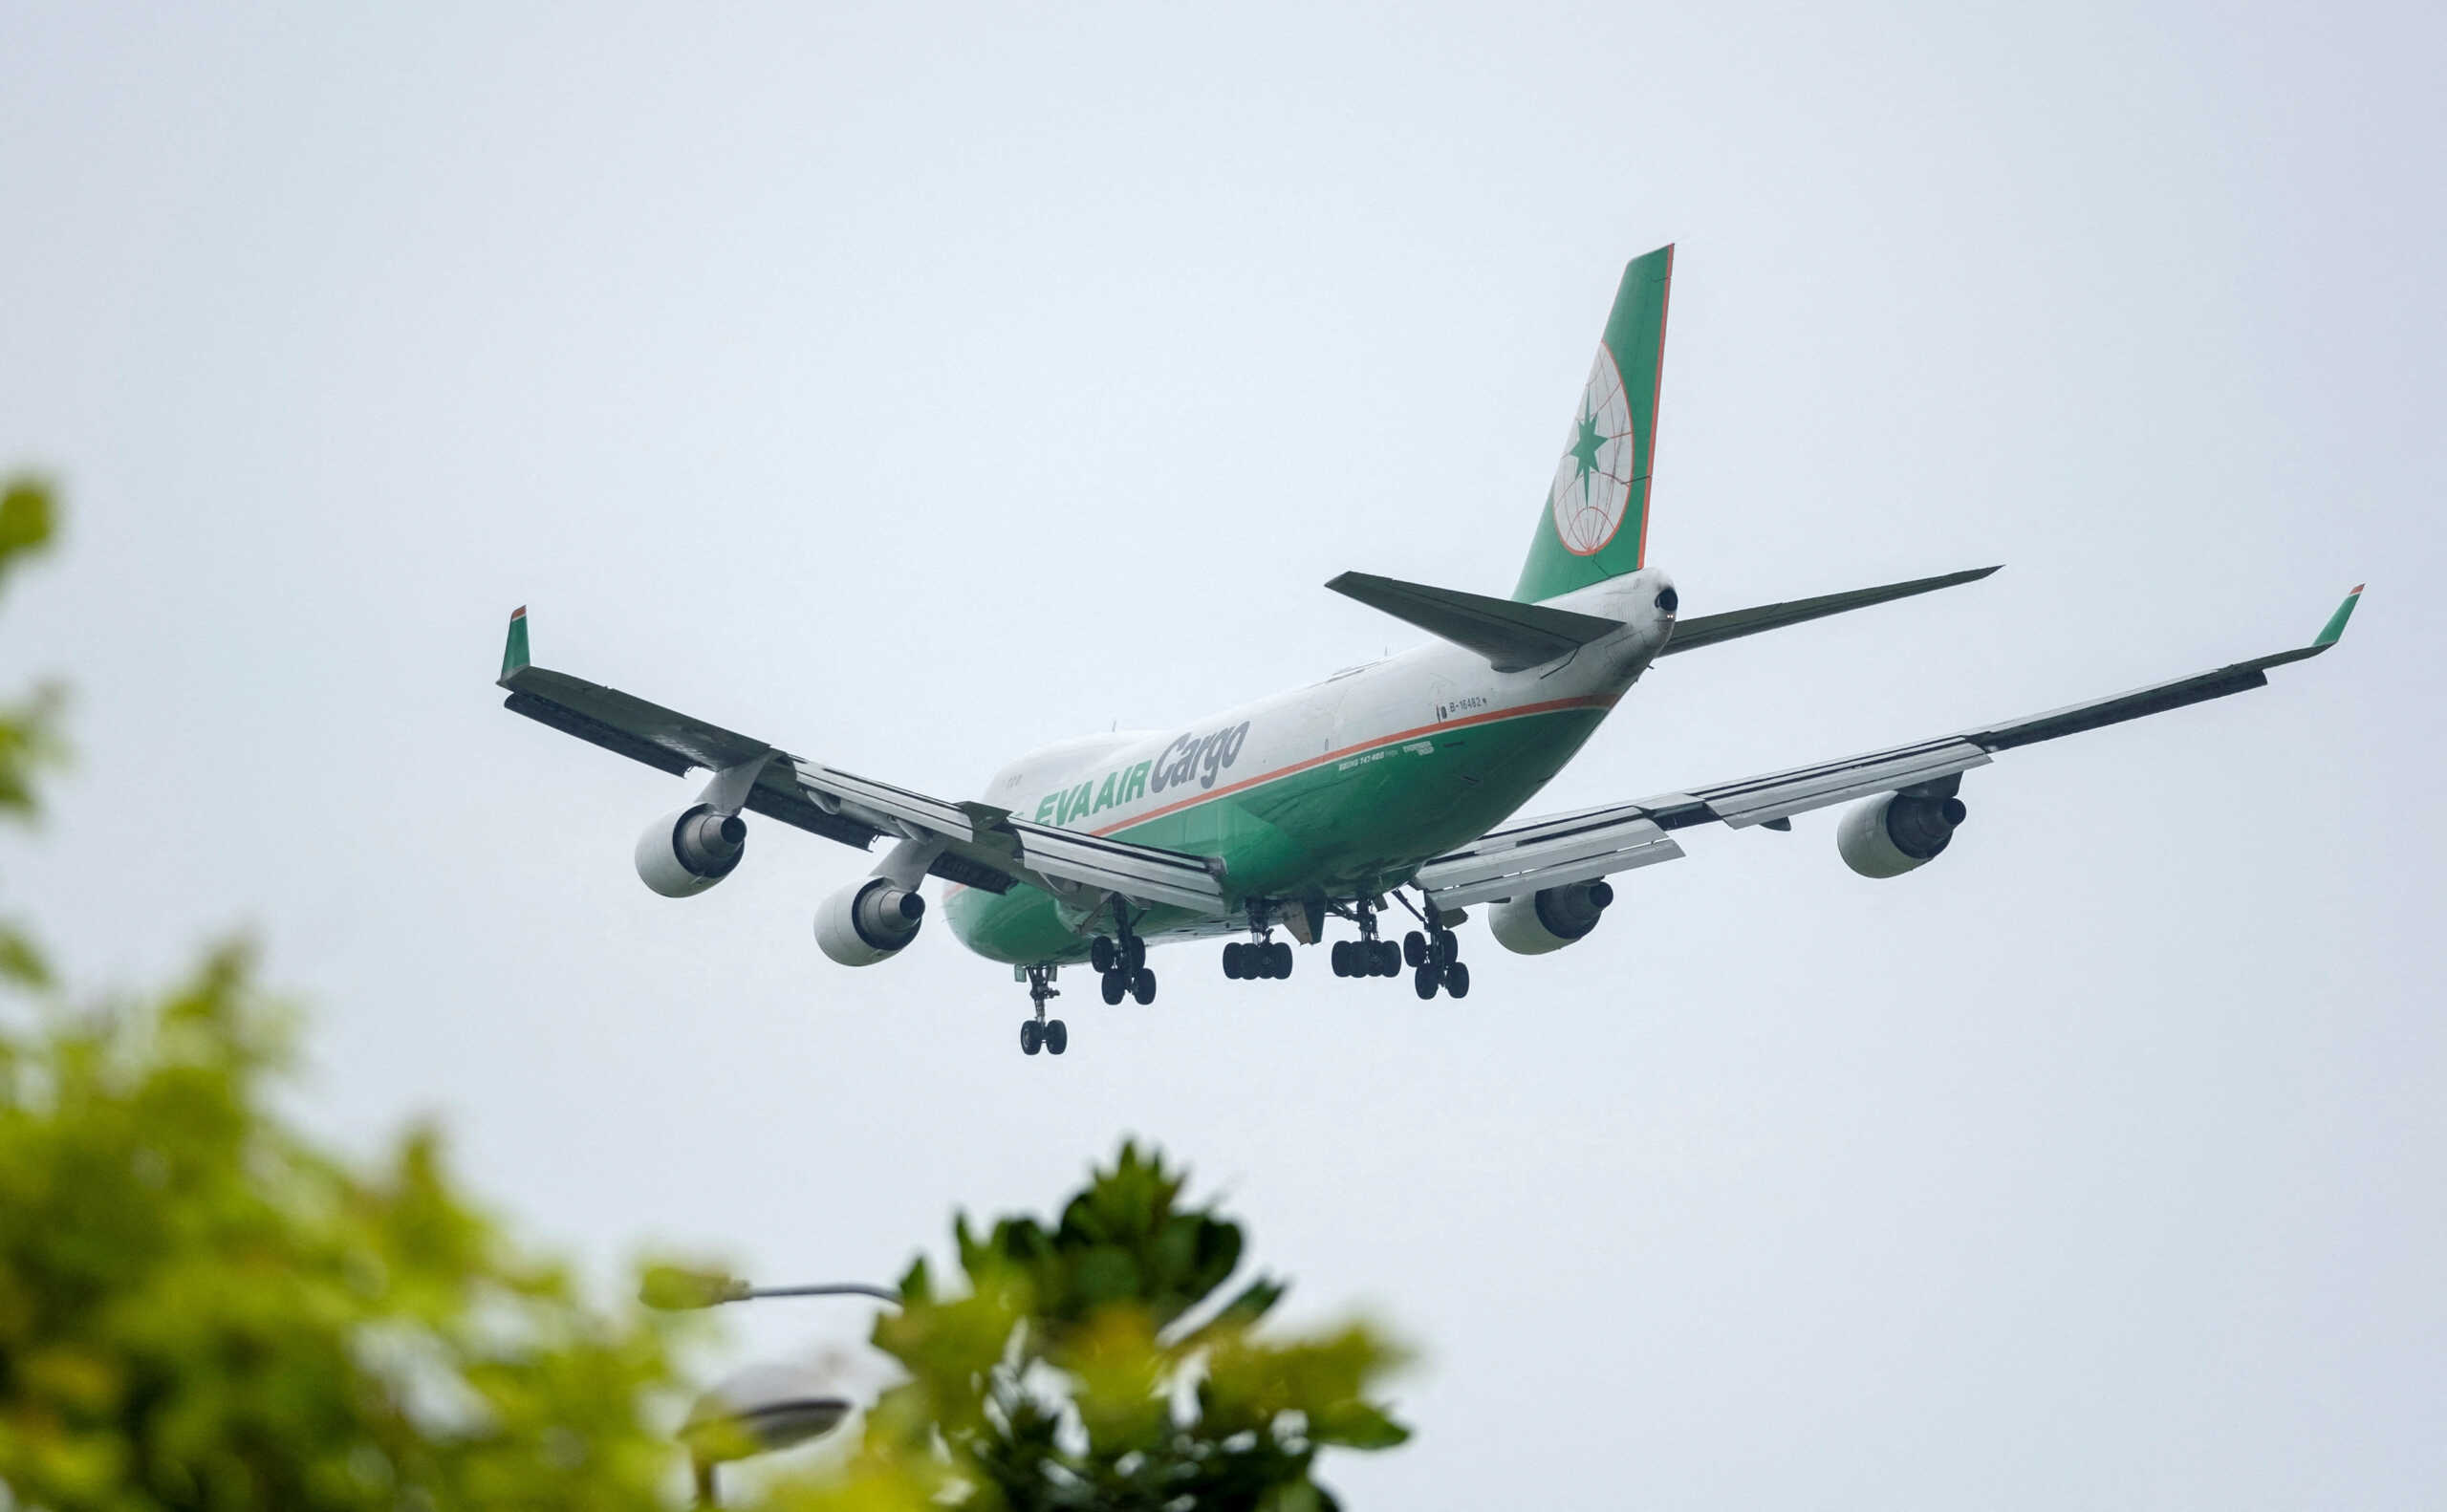 Ινδονησία: Μόλις είχε αποκτήσει δίδυμα ο πιλότος που αποκοιμήθηκε εν ώρα πτήσης